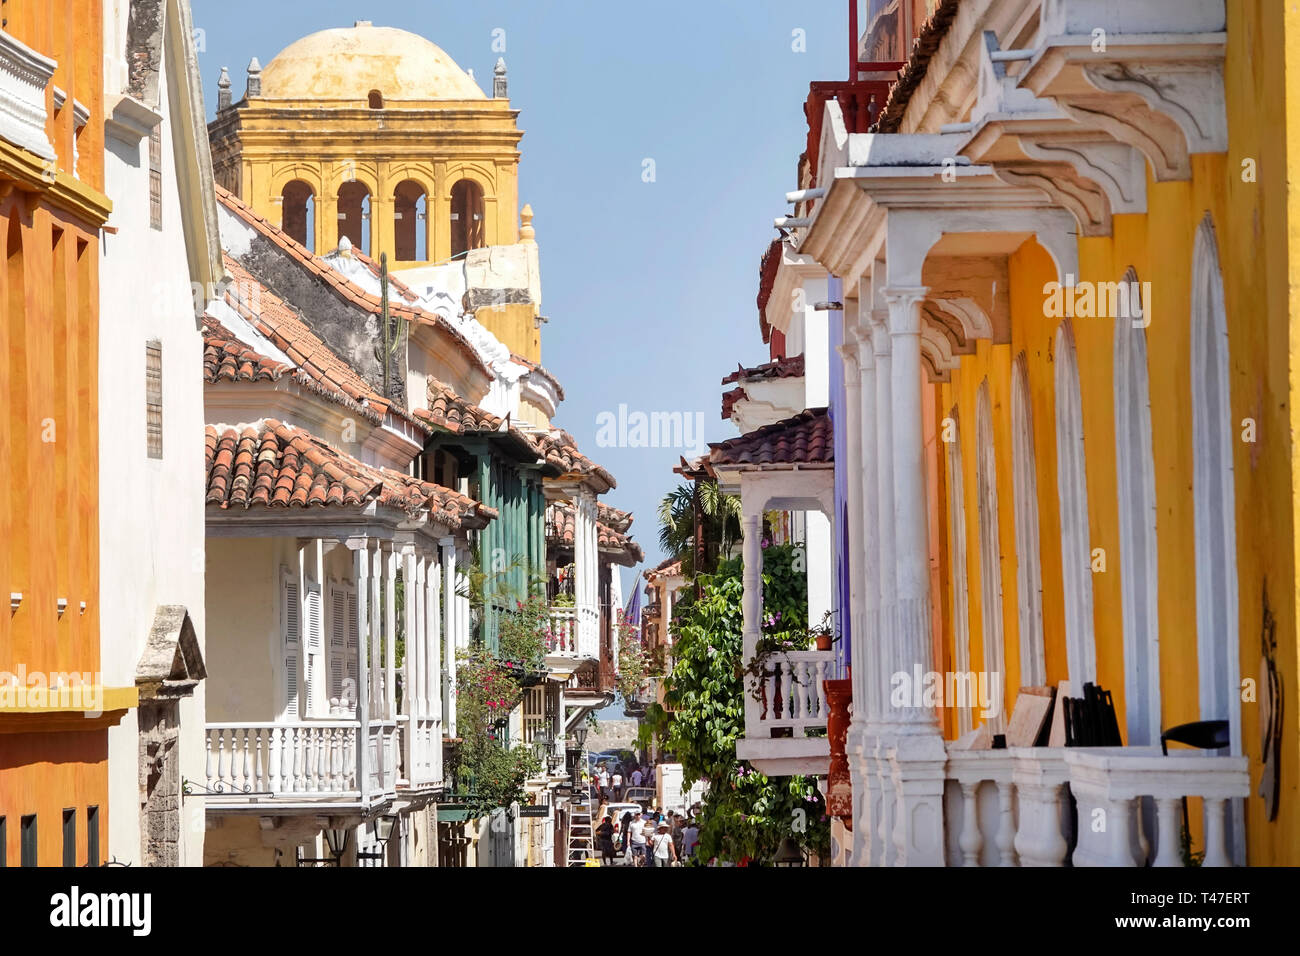 Cartagena COLOMBIA,calle estrecha,balcones,arquitectura colonial,techos de tejas,cúpula,Convento de Santo Domingo,iglesia convento,COL190122028 Foto de stock